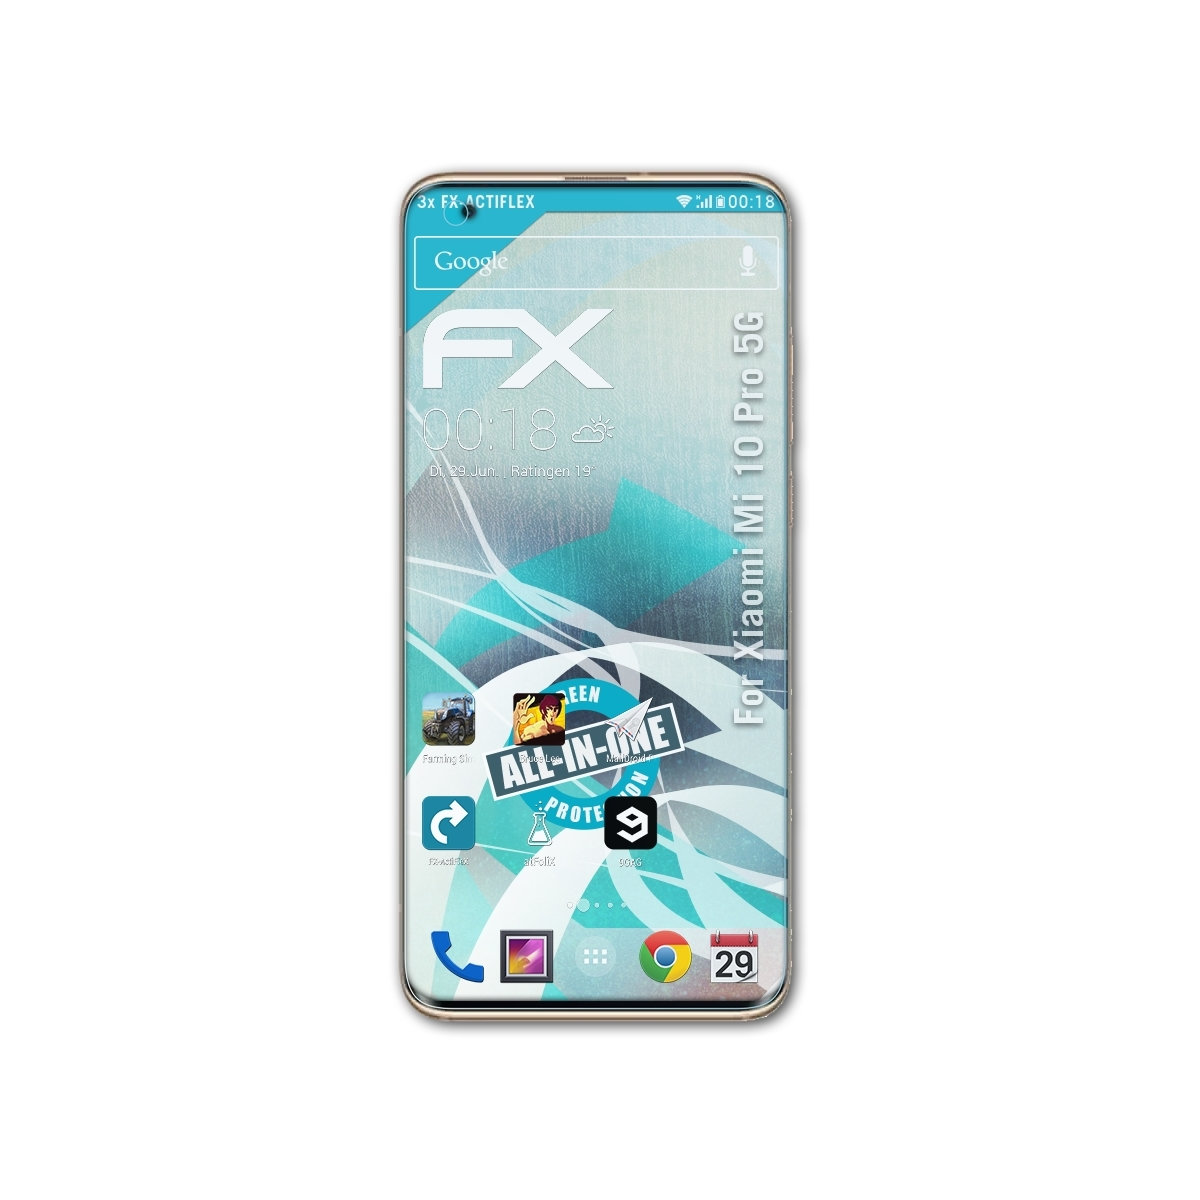 3x ATFOLIX Displayschutz(für 5G) Mi 10 Pro Xiaomi FX-ActiFleX